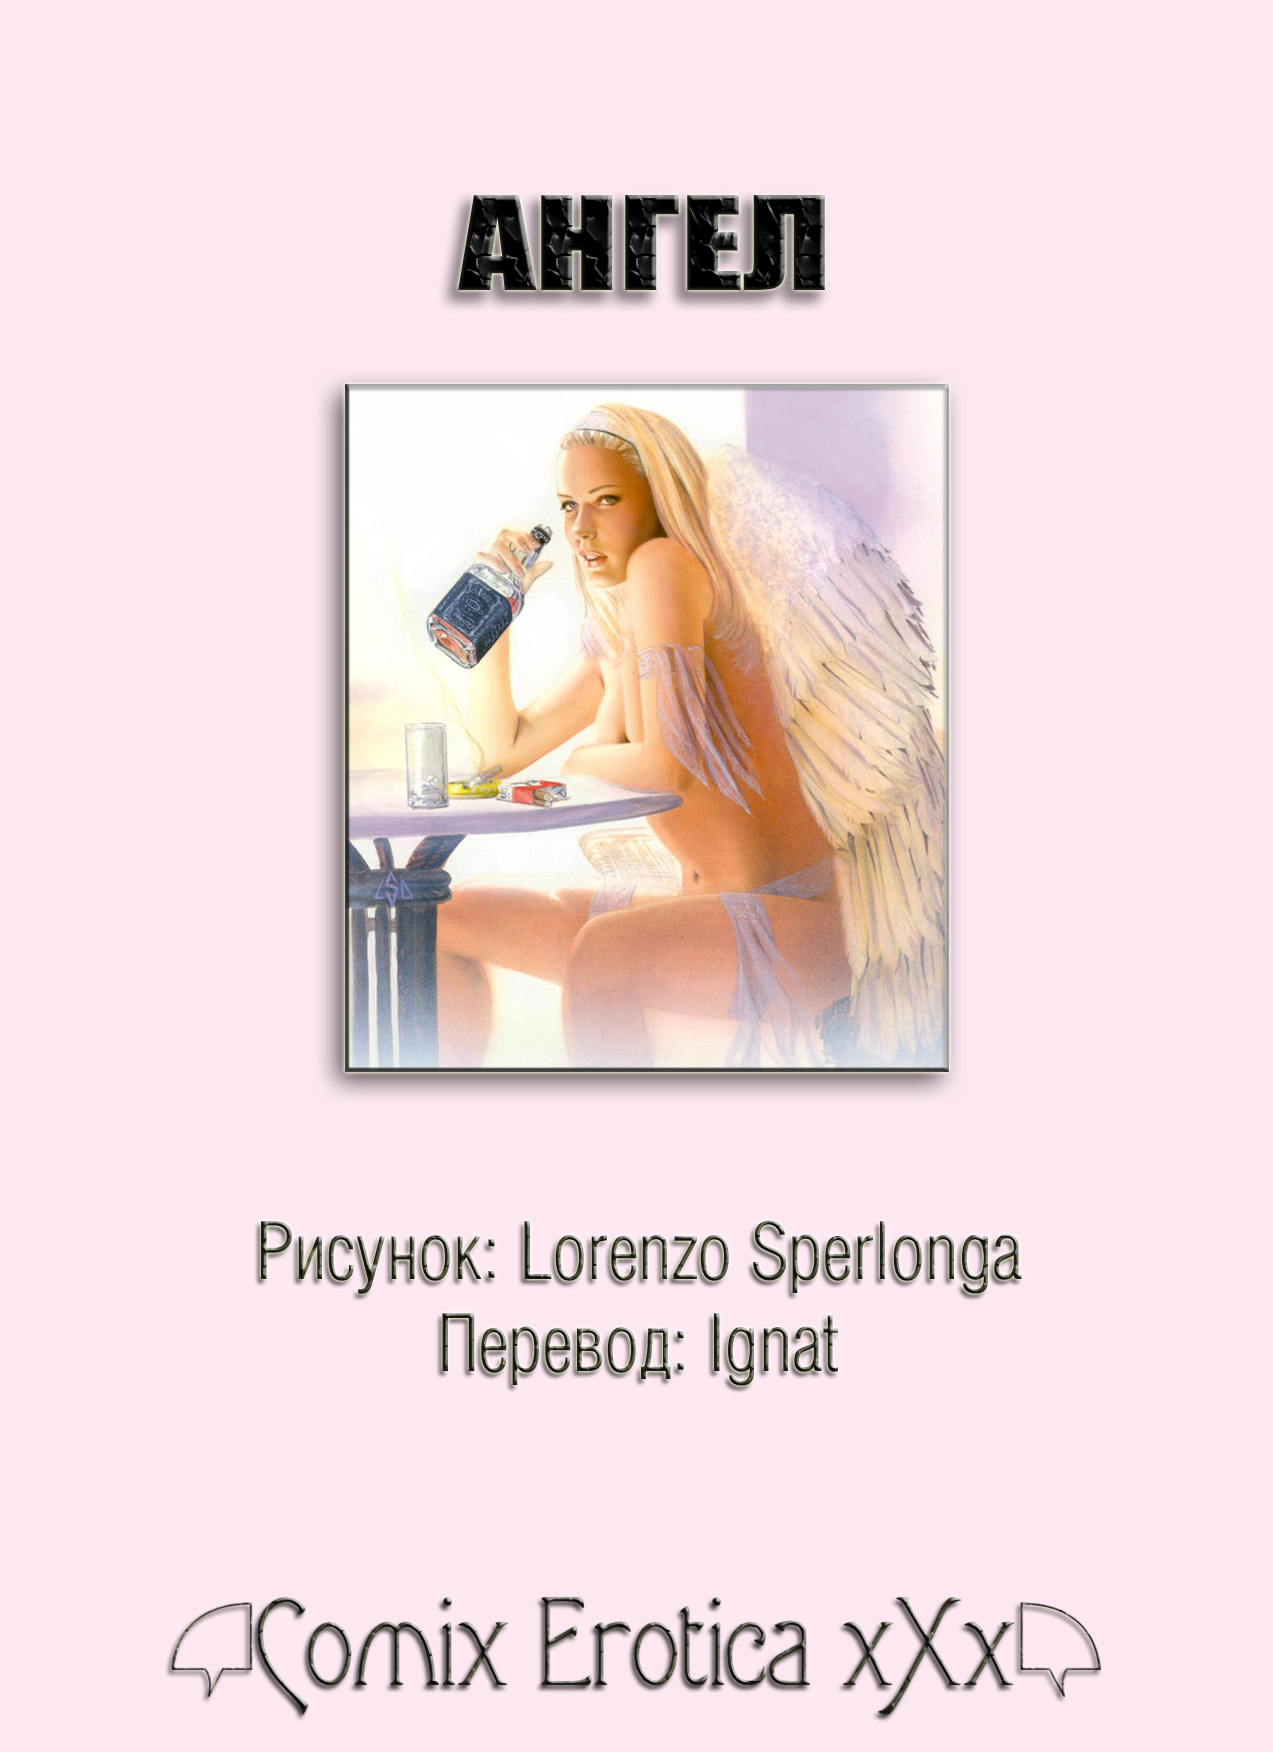 Angel (Литл Ангел) - порно видео с моделью в HD качестве и биография.